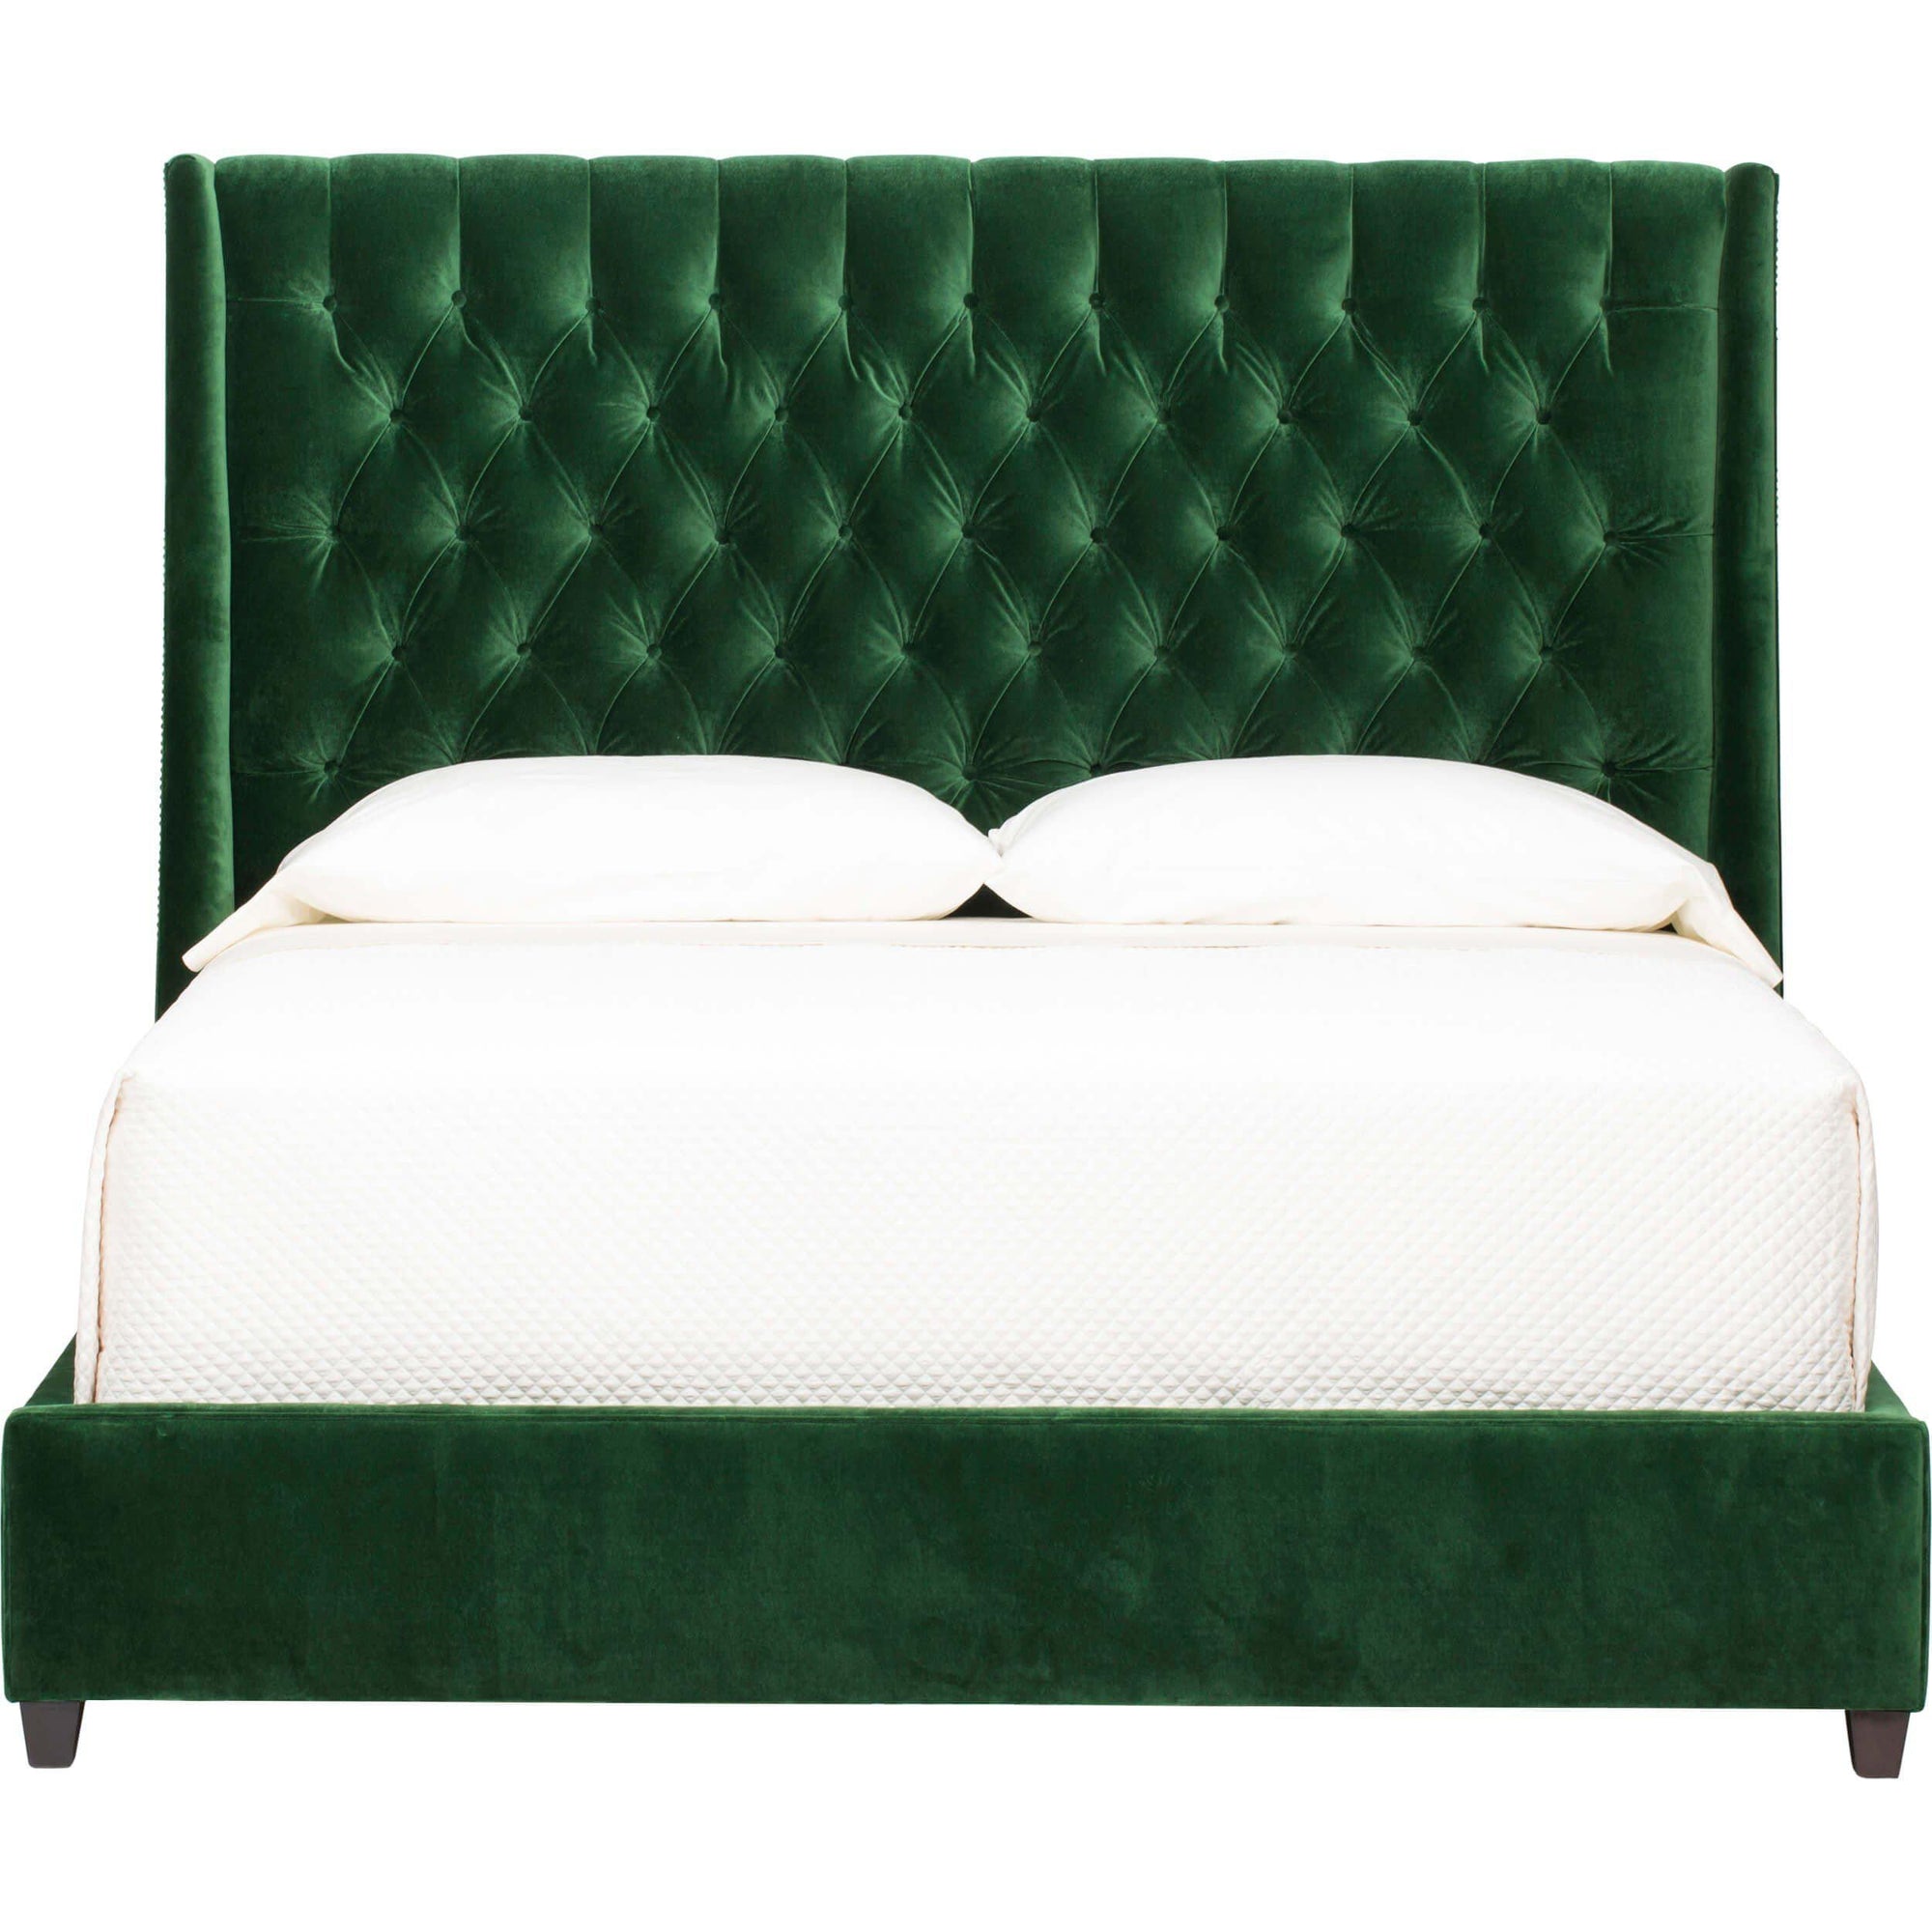 Мягкий двухместный. Кровать 160х200 каретная стяжка. Хофф зеленая кровать. Кровать Maxwell зеленого цвета 200х200.